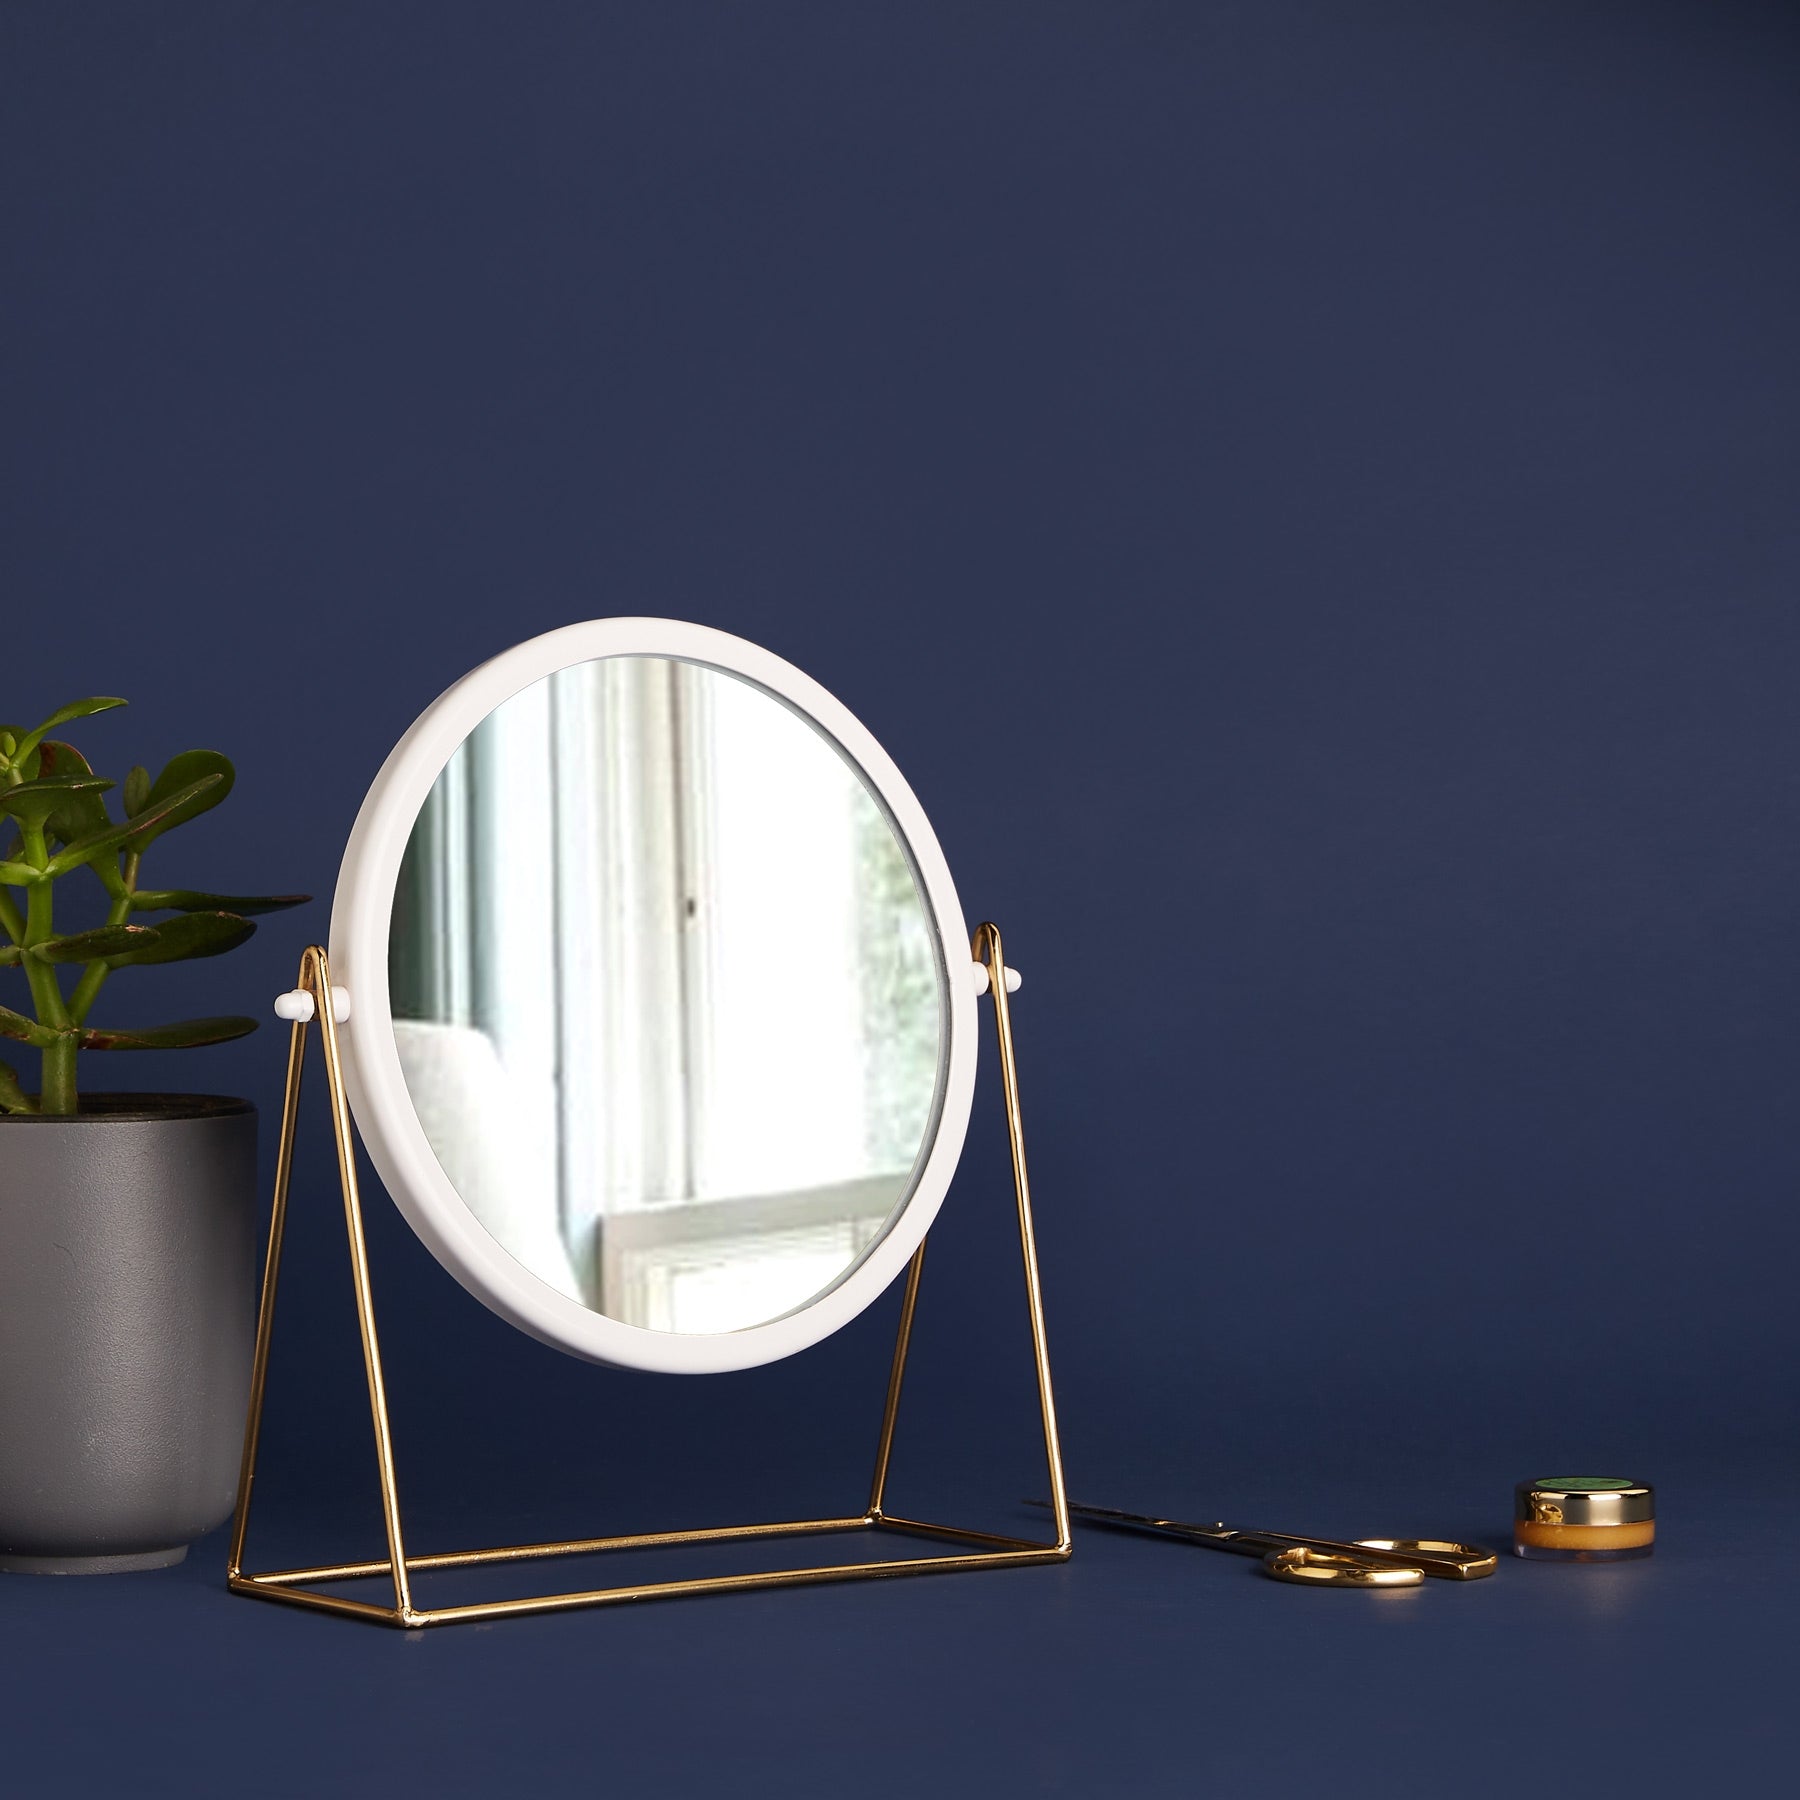 White & Gold Minimal Round Table Mirror